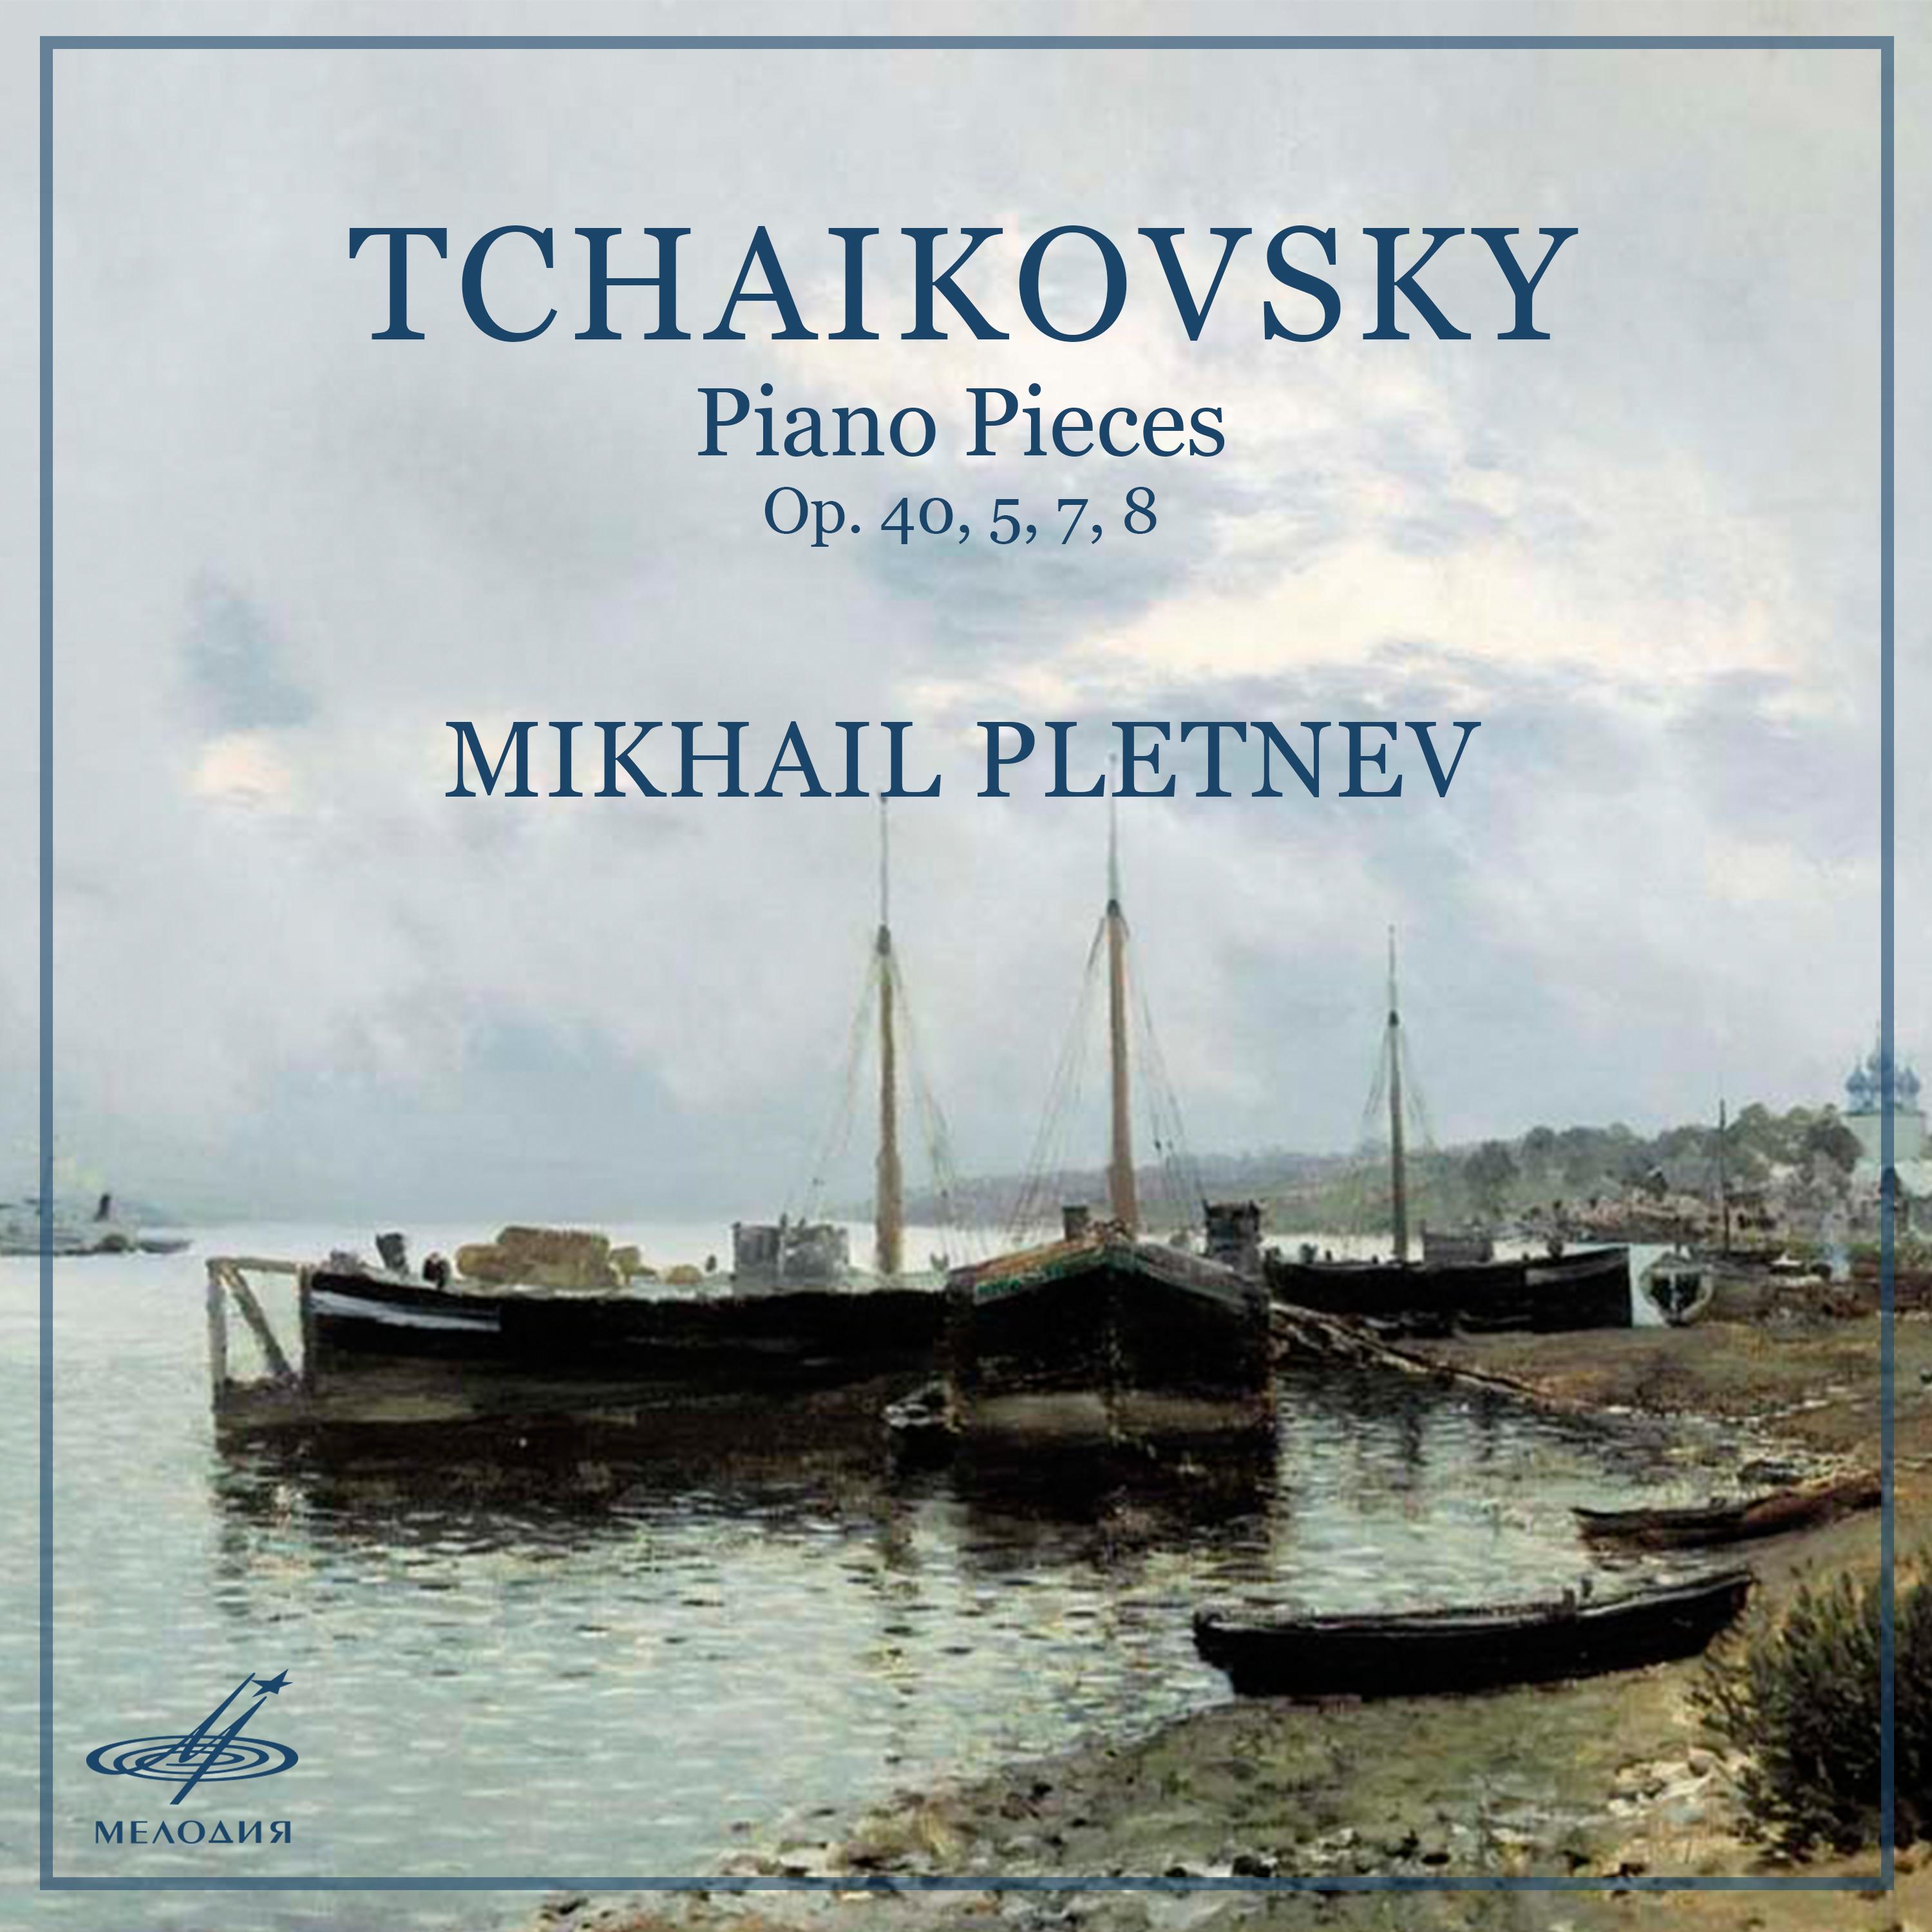 Tchaikovsky: Piano Pieces, Op. 40, 5, 7, 8